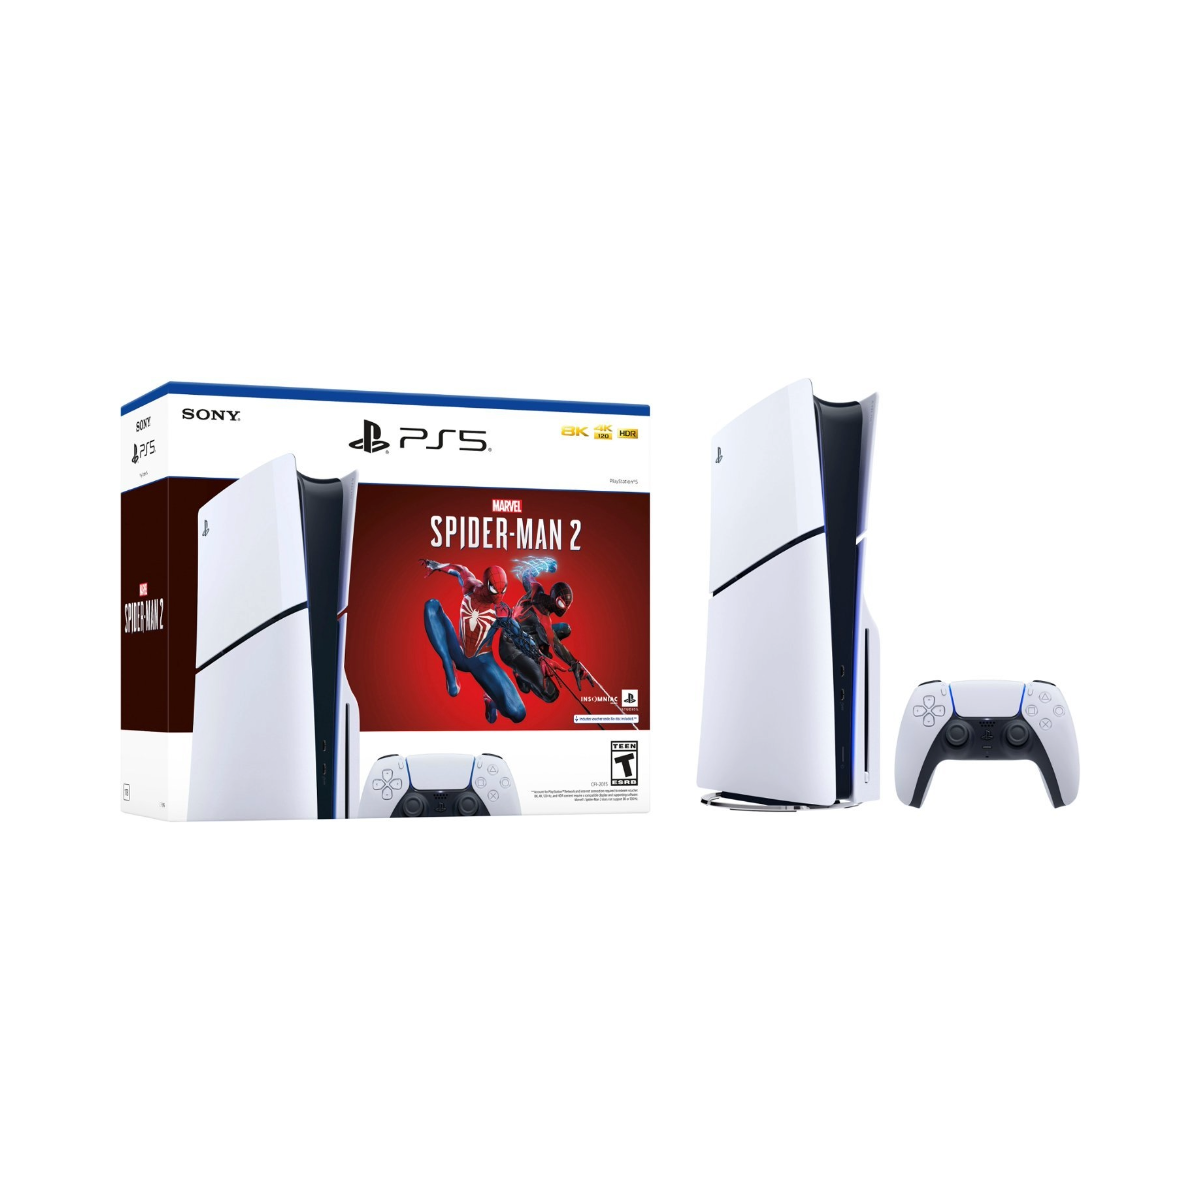 Sony presenta la nueva consola PS5 – Marvel's Spider-Man 2 Edición Limitada